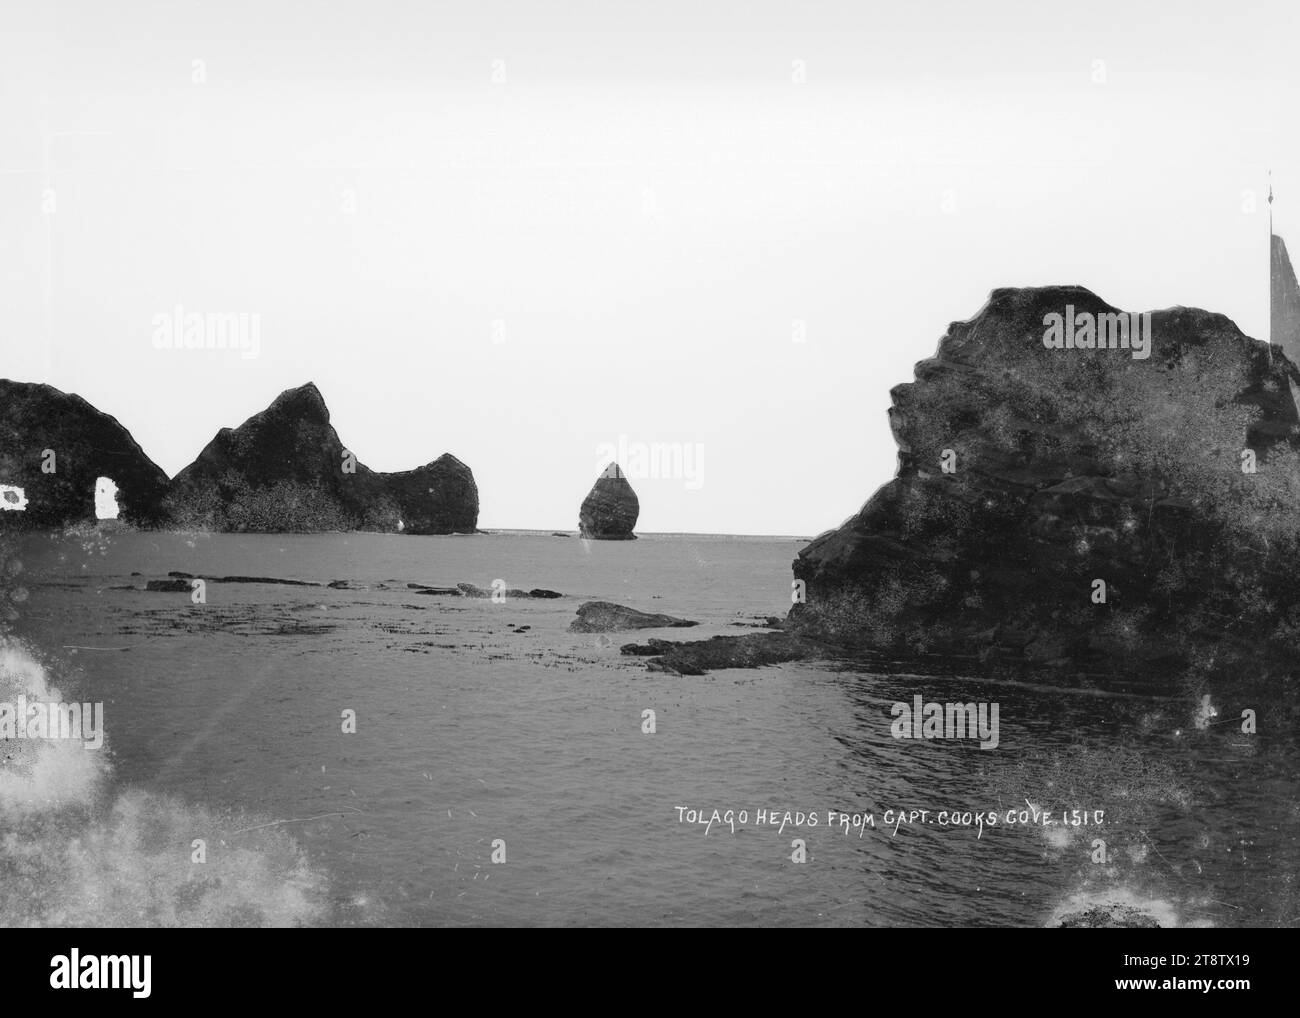 Tolaga Heads von Captain Cook's Cove, Blick auf Tolaga Heads von Captain Cook's Cove, Gisborne. Zeigt schroffe Felsformationen, bekannt als „die Haystacks“ am Eingang zum Hafen. Foto zwischen 1906 und 1912 Stockfoto